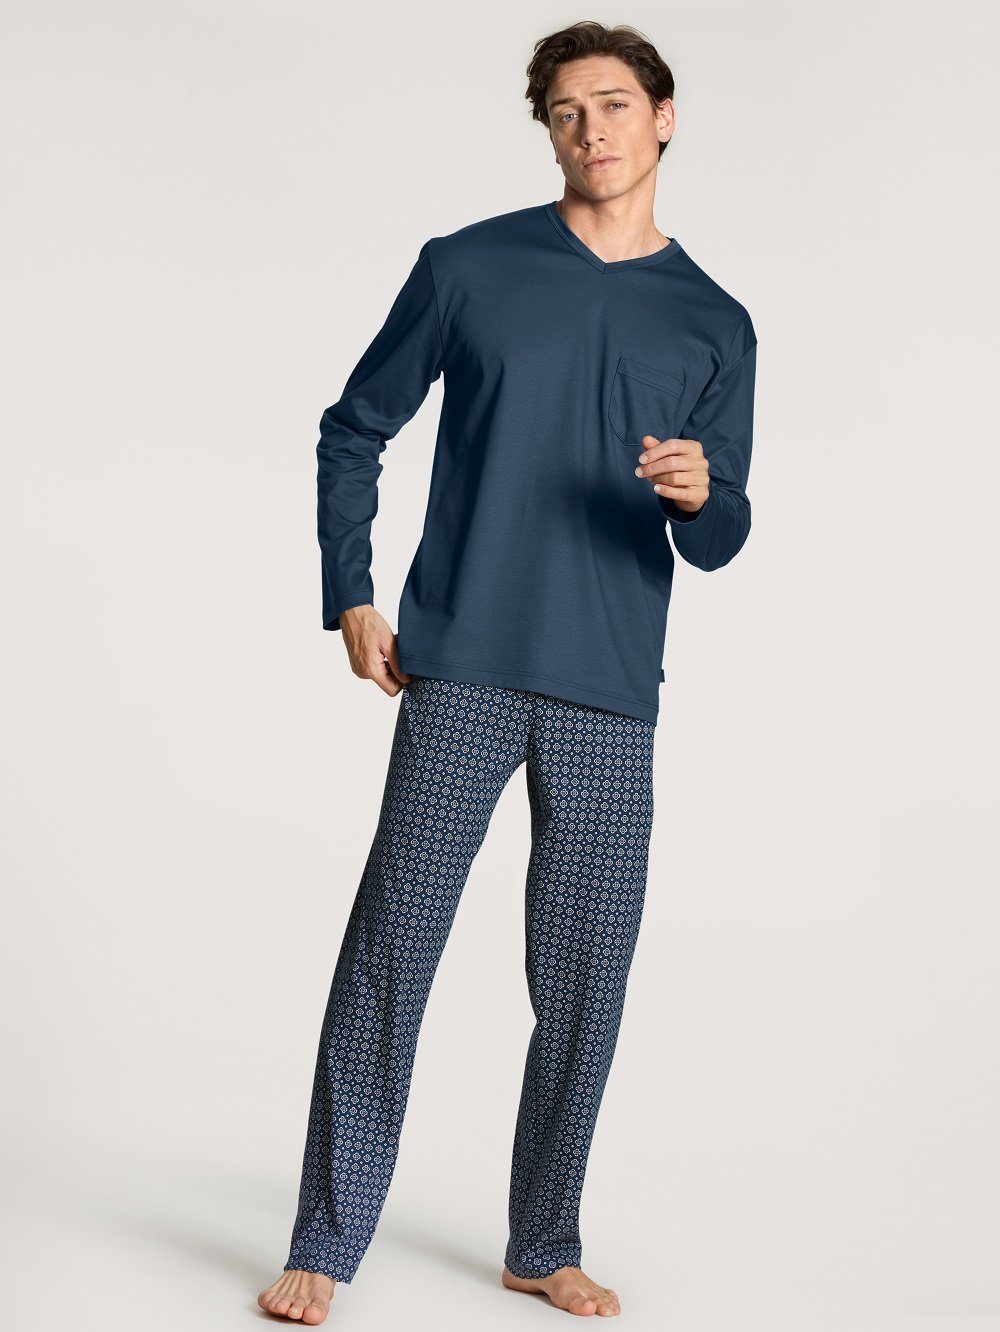 CALIDA Pyjama Calida Herrenpyjama 46480 blau (1 Stück, 1 tlg., 1 Stück)  gemusterte Hose, Brusttasche